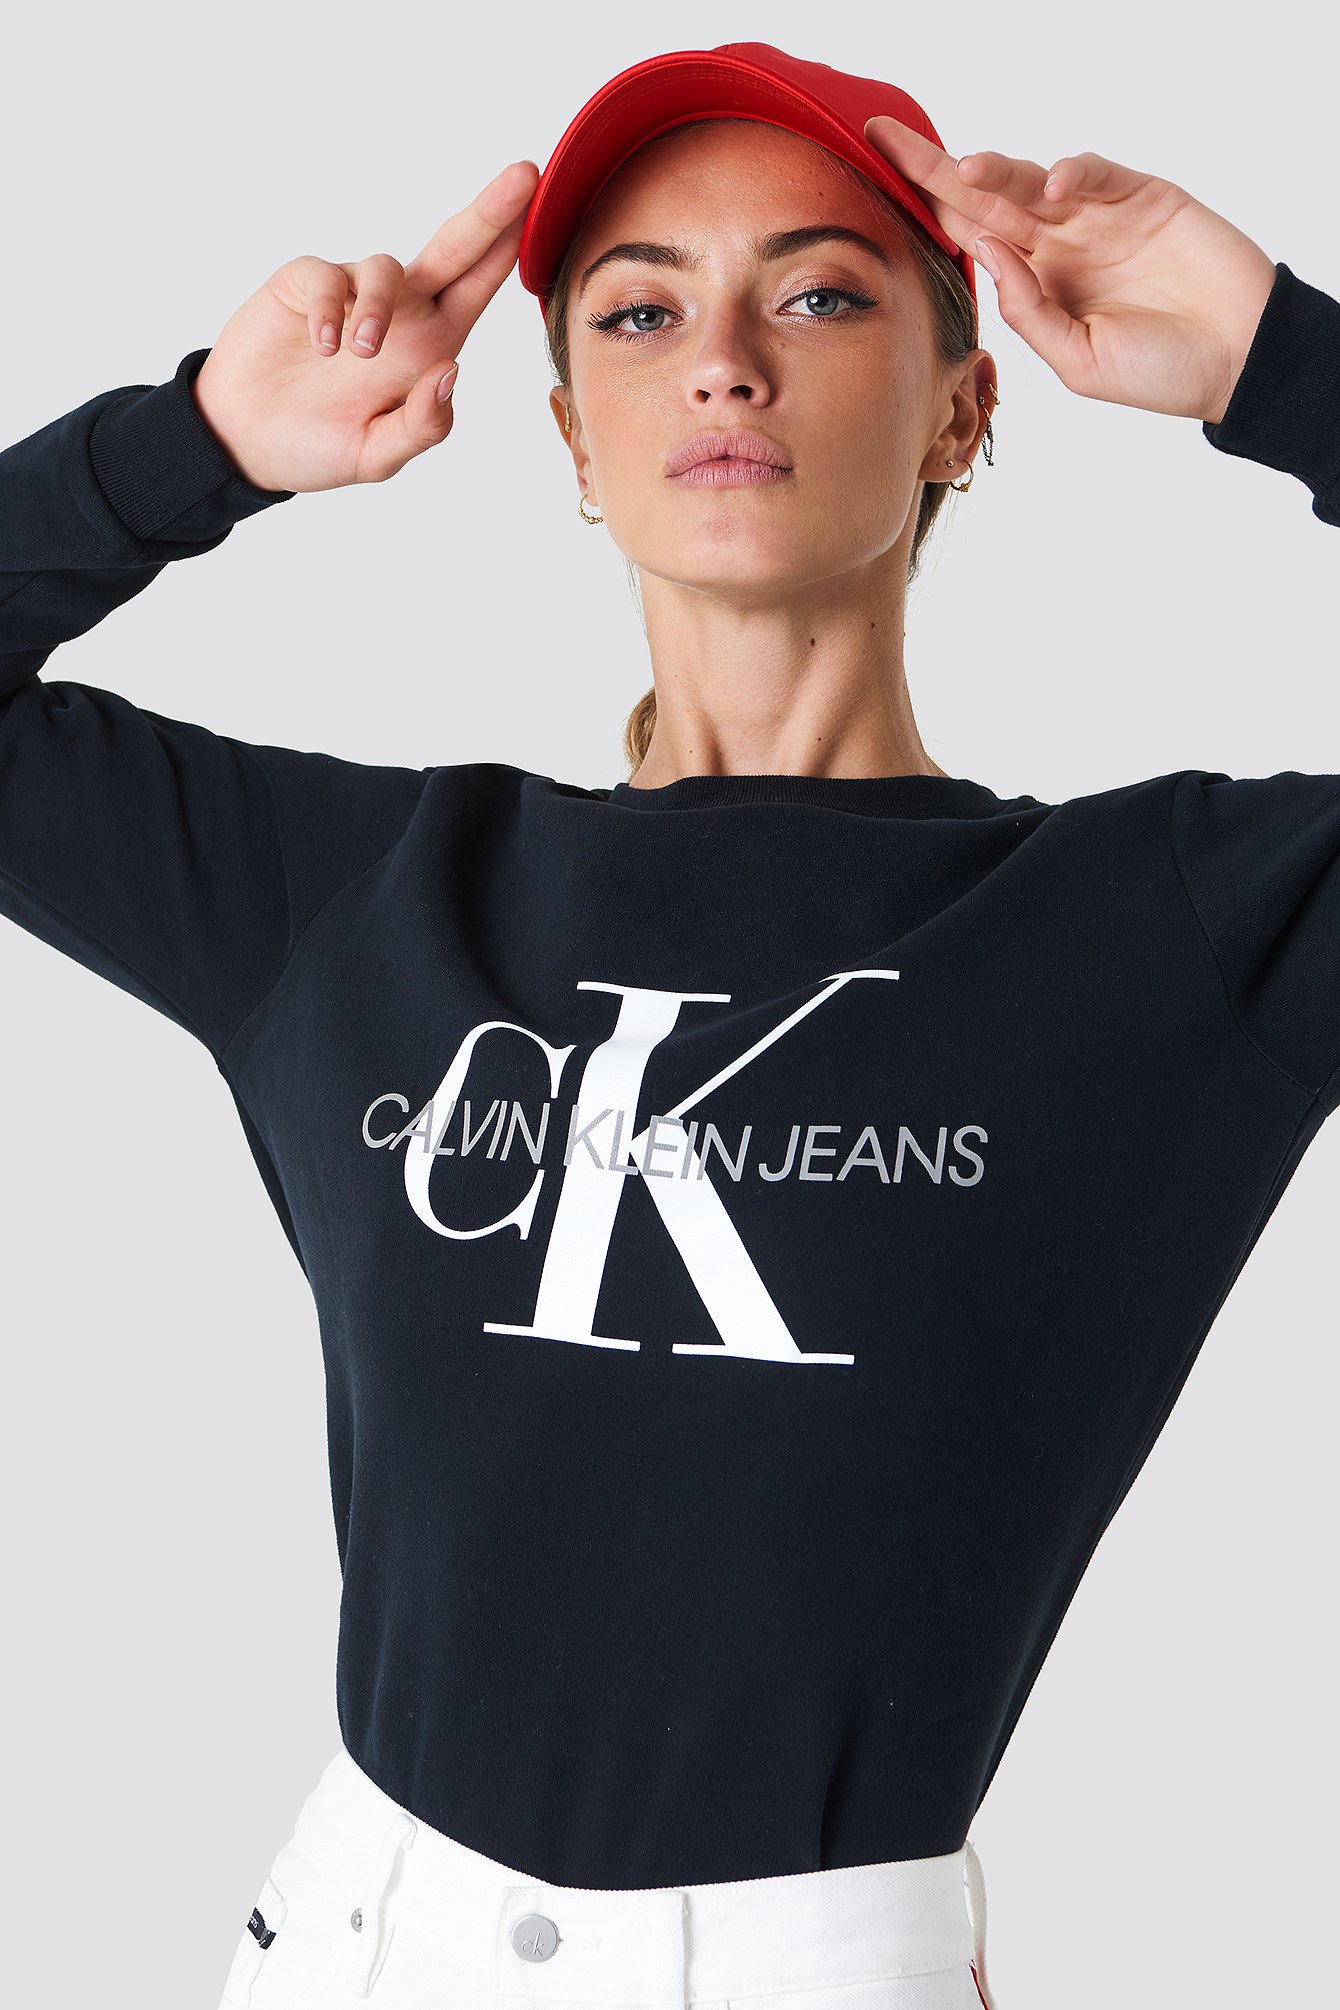 calvin klein jeans monogram sweatshirt